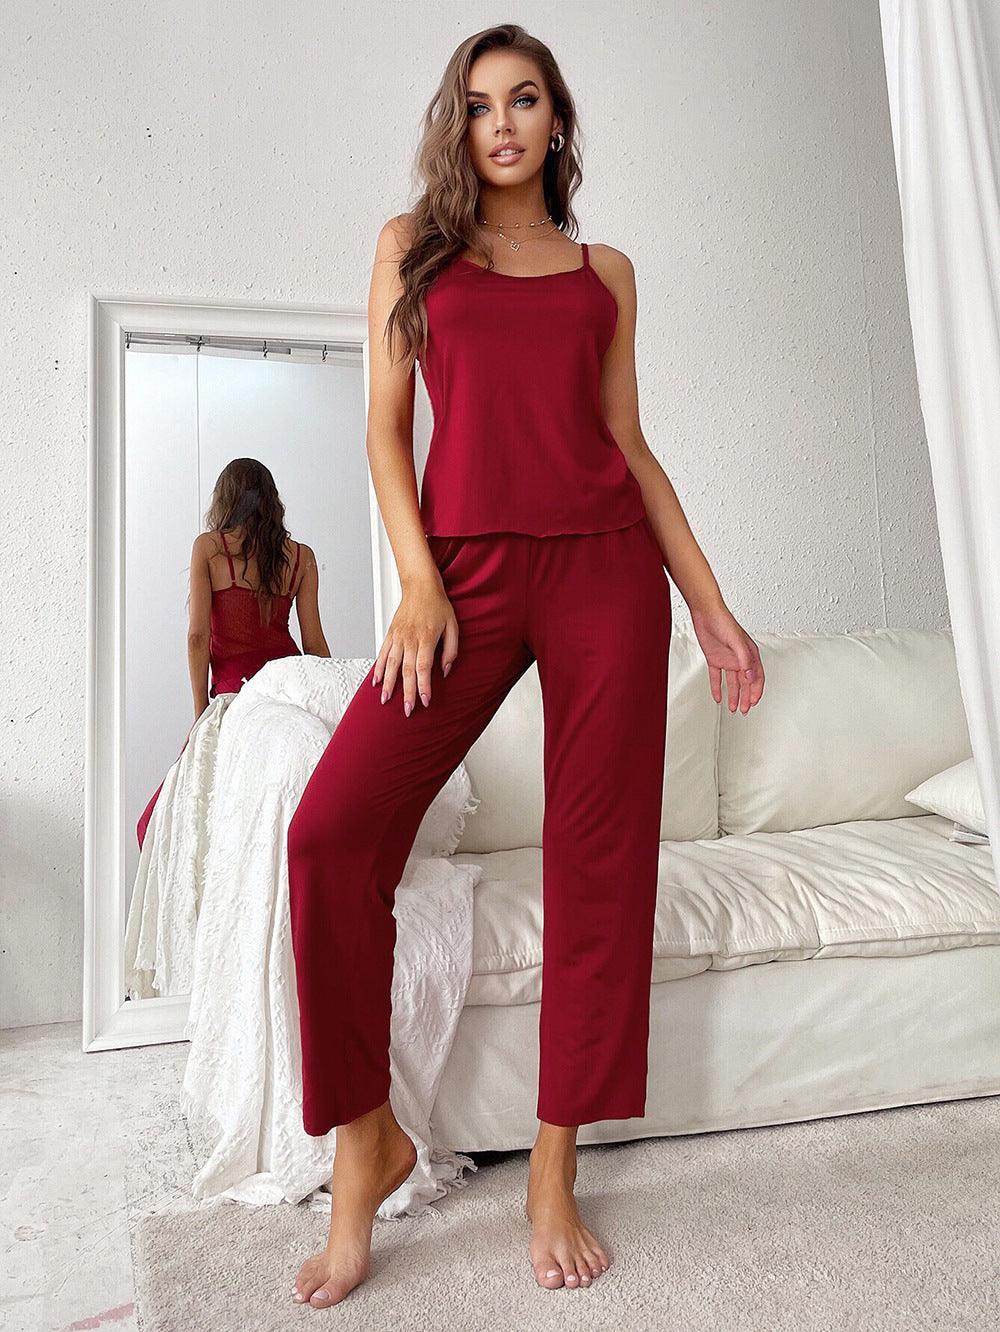 Backless Suspender Trousers Pyjamas Set - ForVanity sleepwear, Sweet Dreams, women's lingerie Pajamas